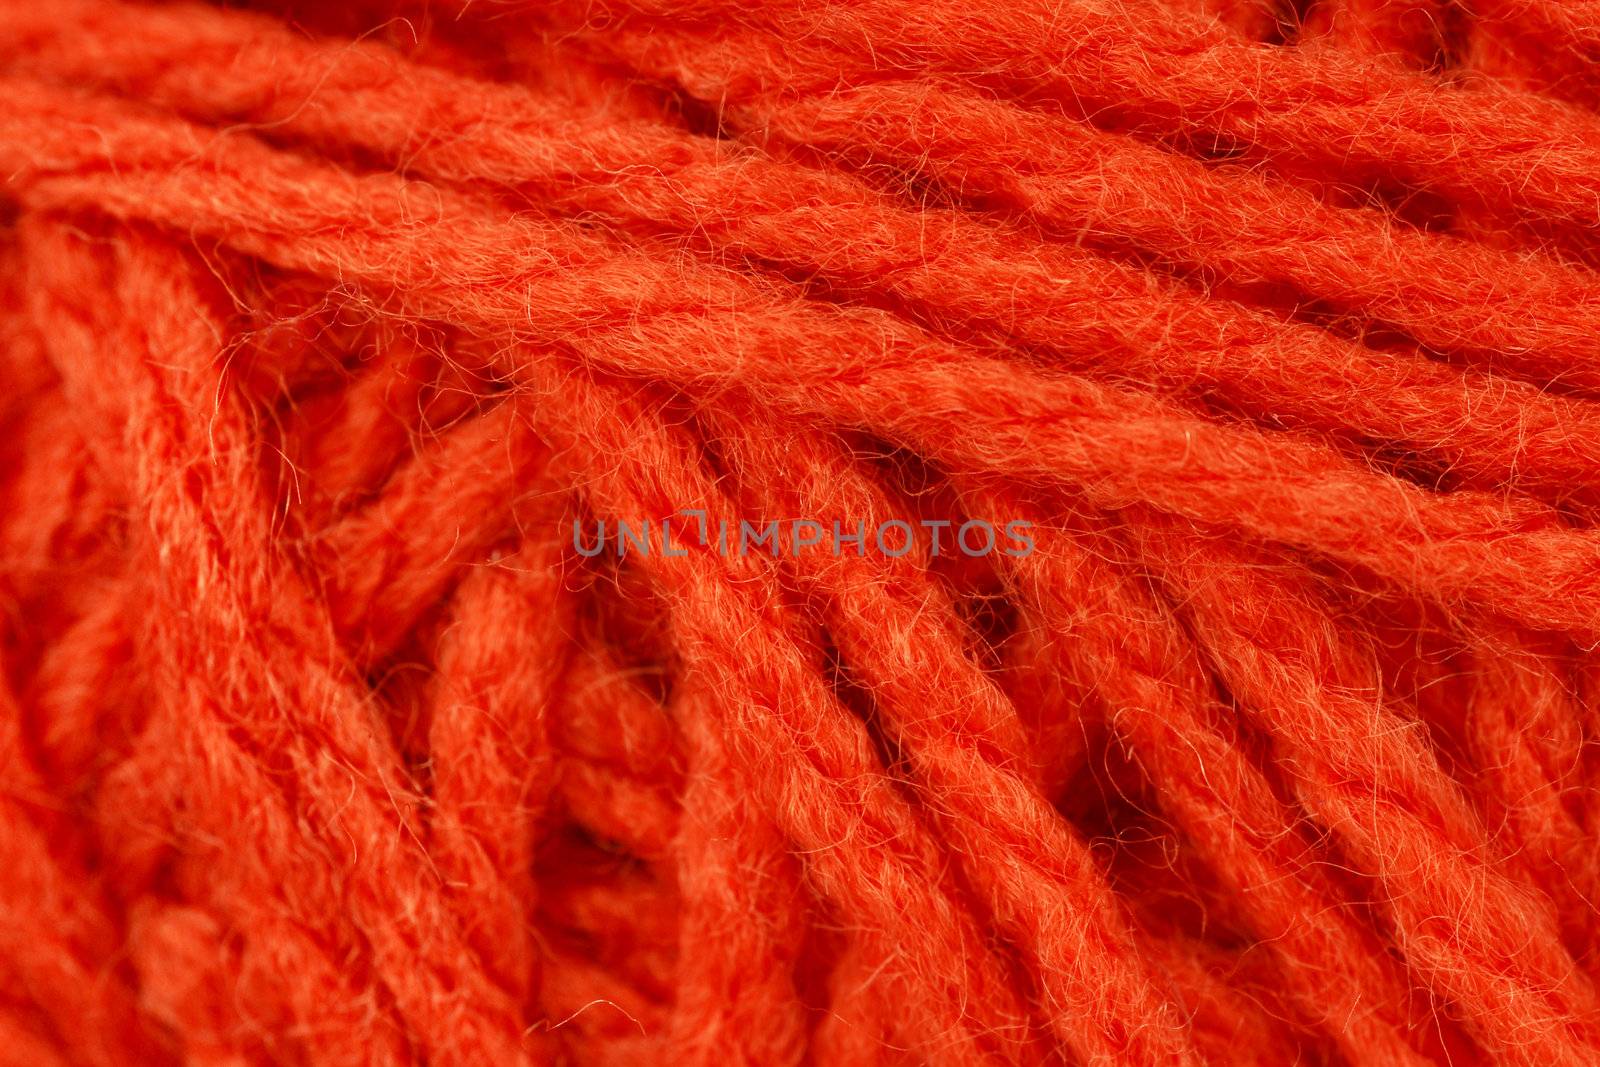 Macro shot of orange yarn or wool by Mirage3